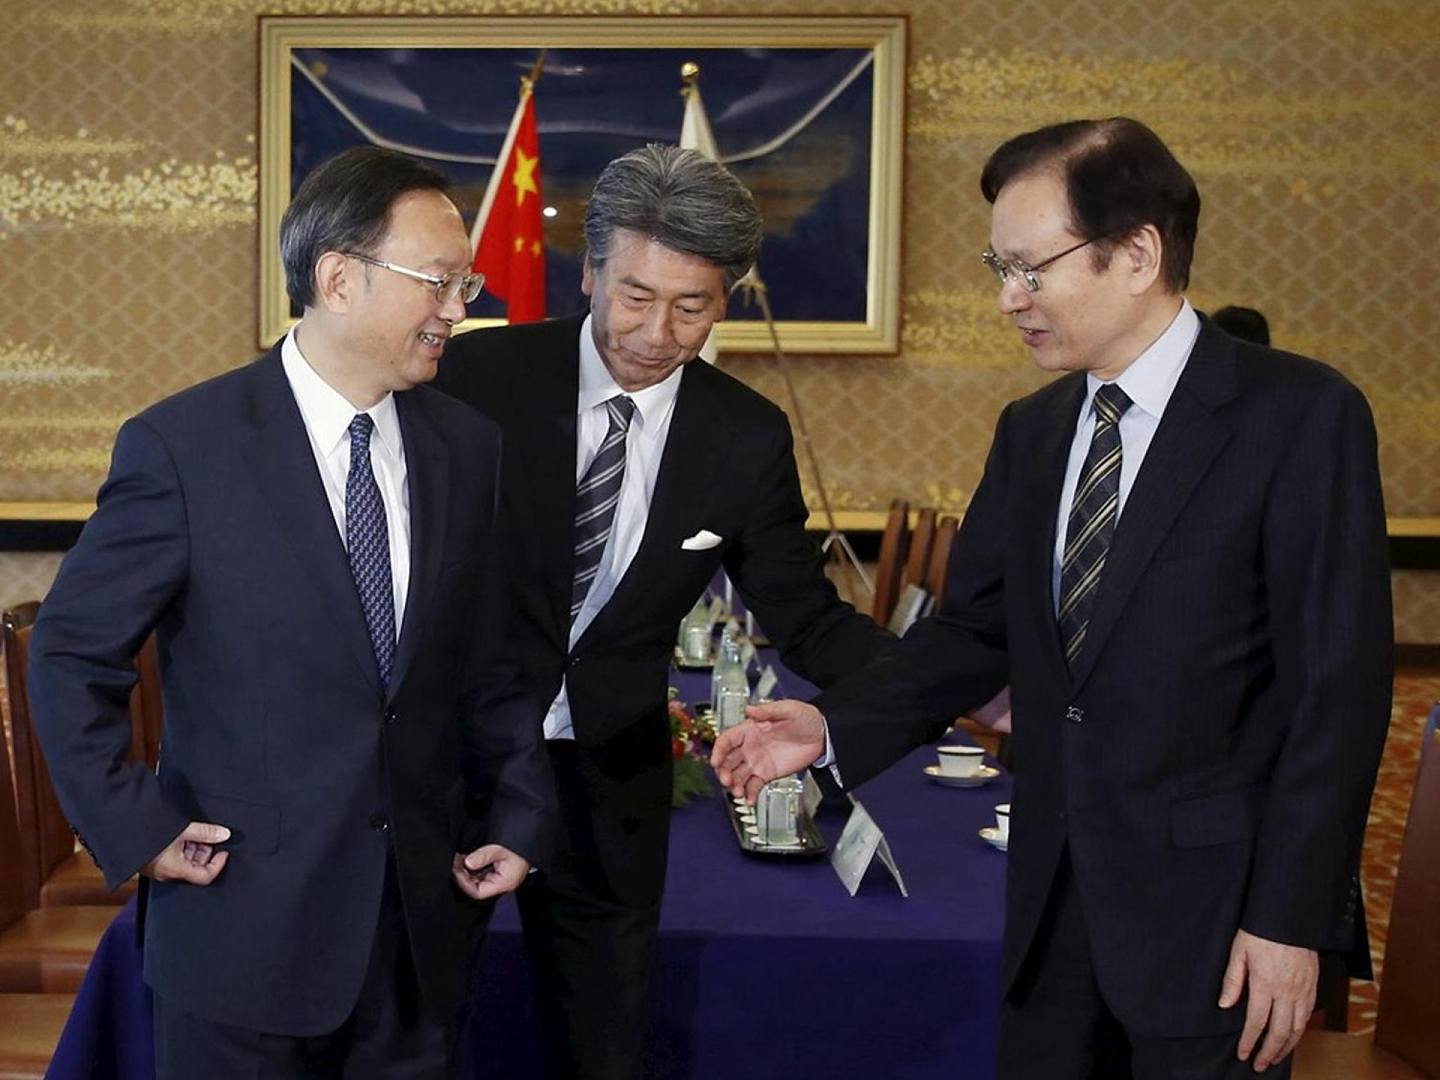 2015年10月13日，时任中国国务委员杨洁篪（左）访问日本，会晤时任日本国家安全保障局长谷内正太郎（右），现场争执钓鱼岛问题气氛尴尬。（Reuters）